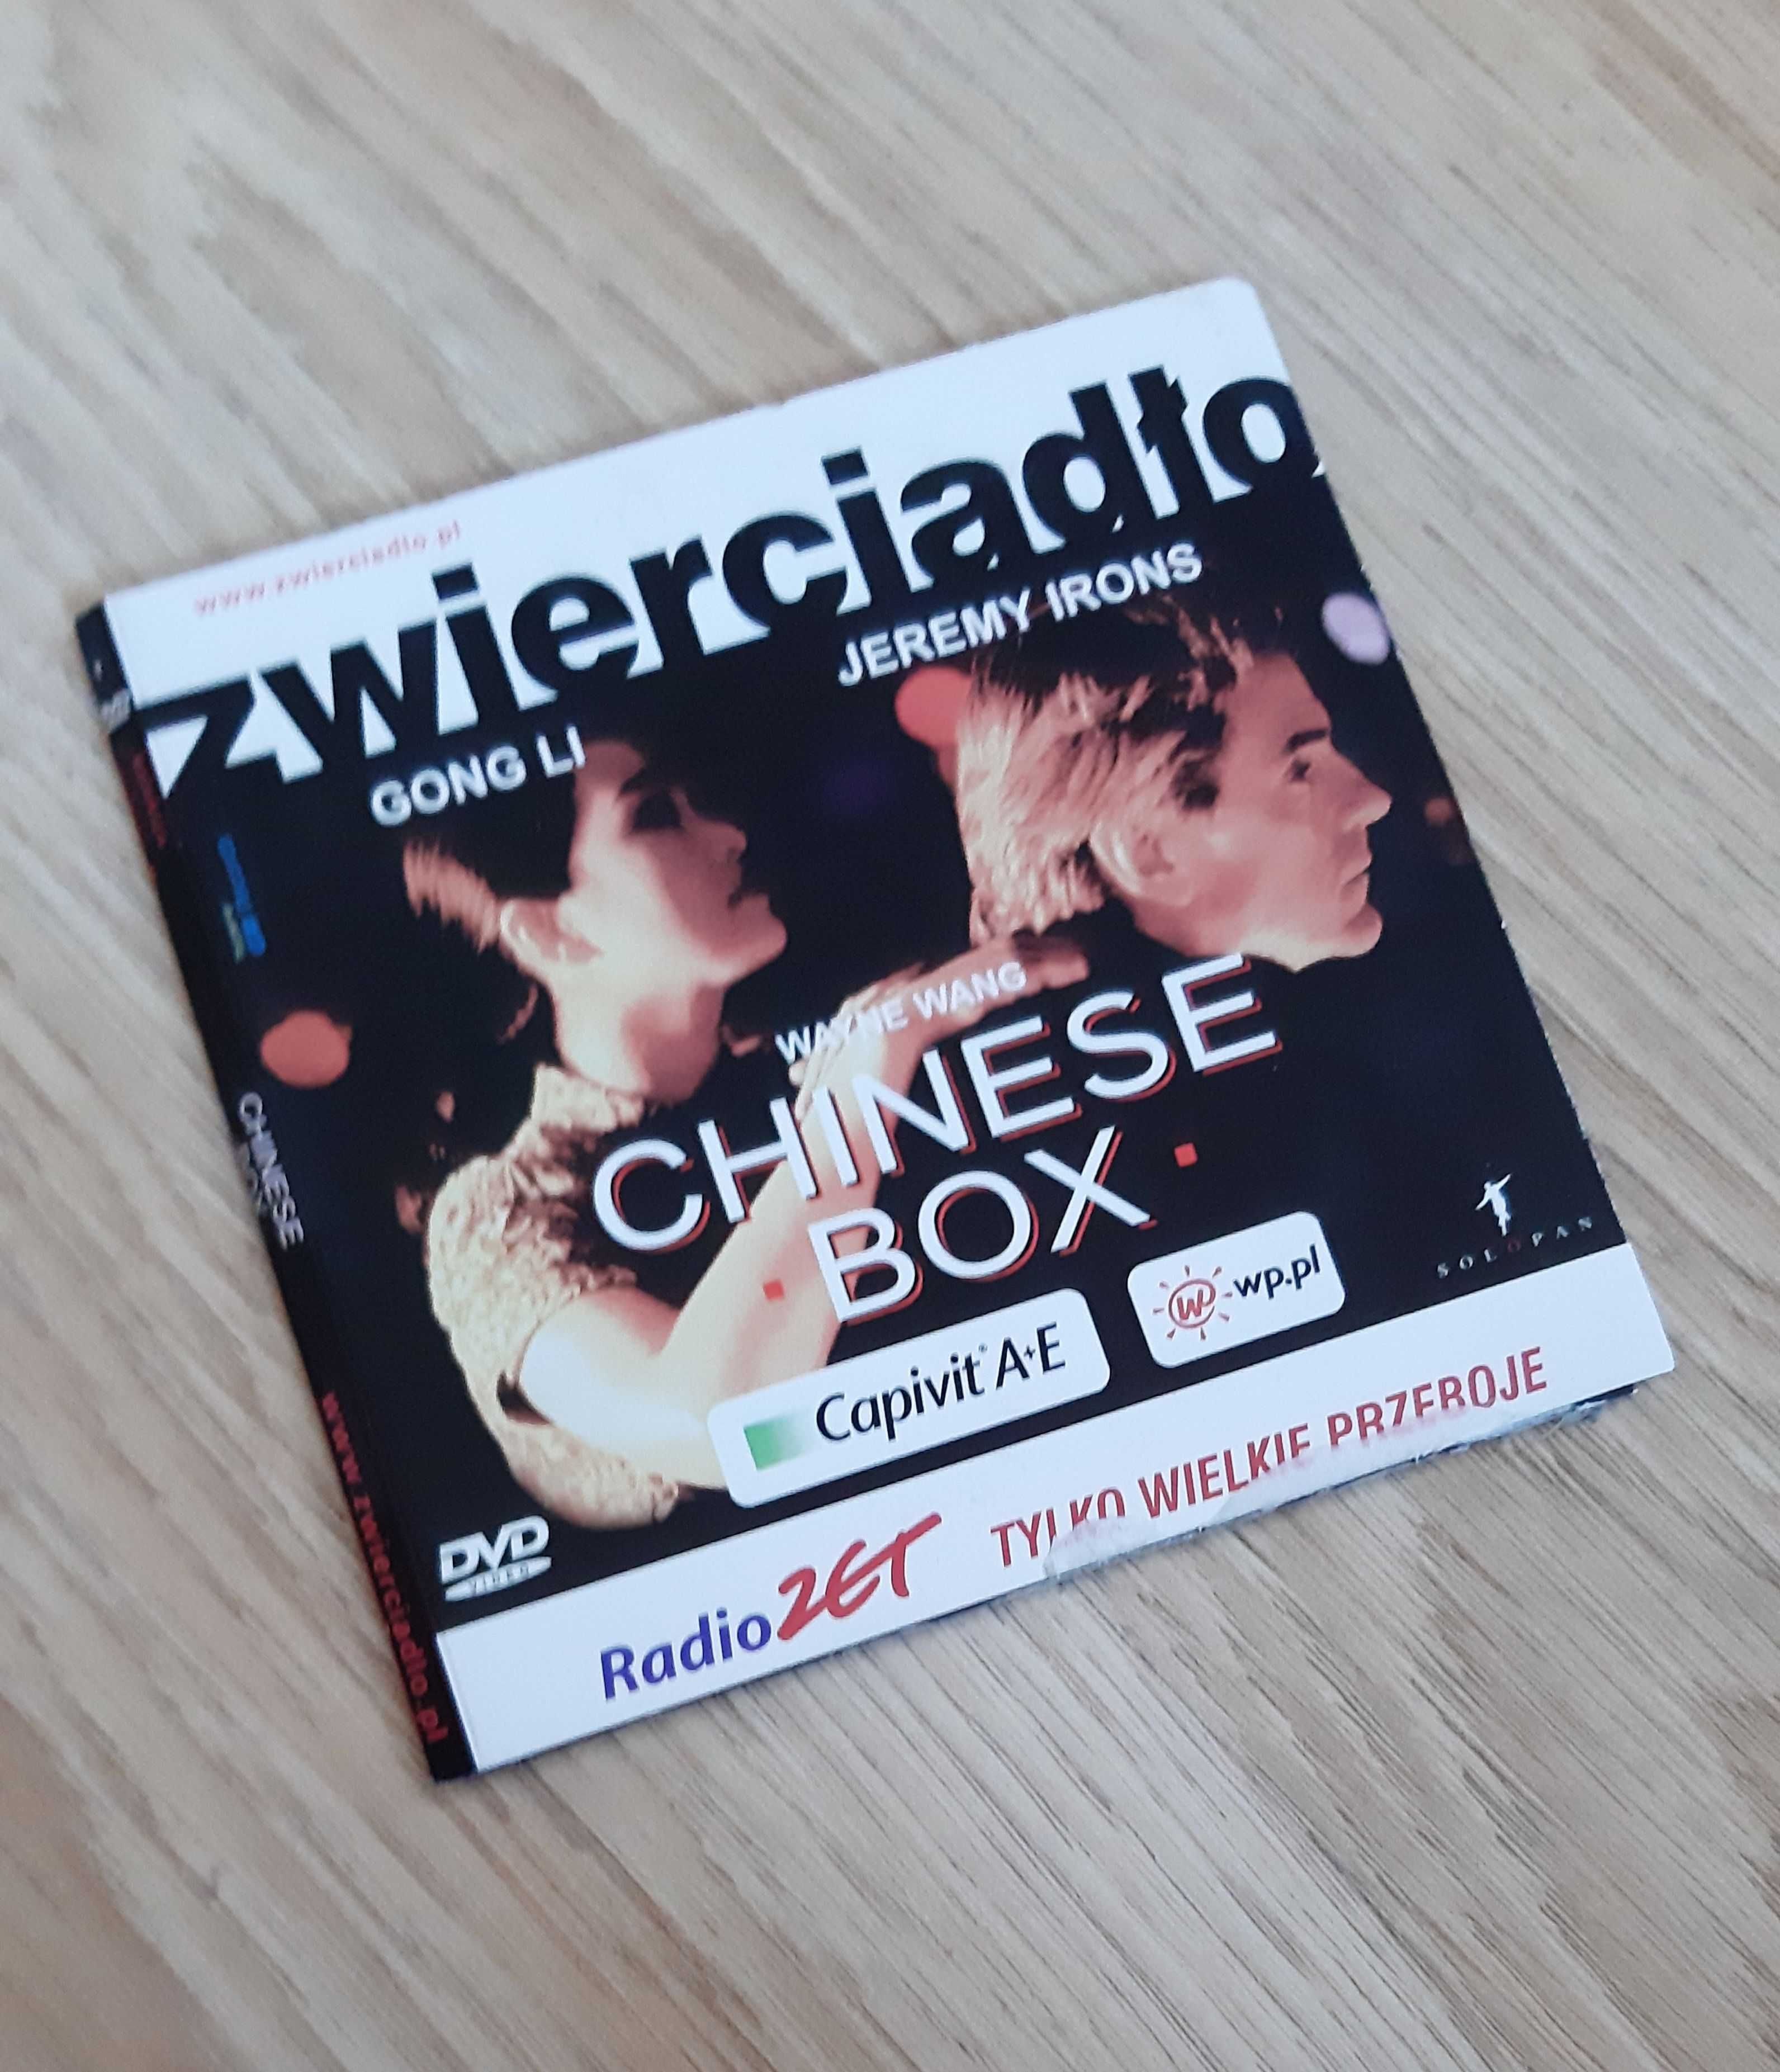 Chinese box - film DVD